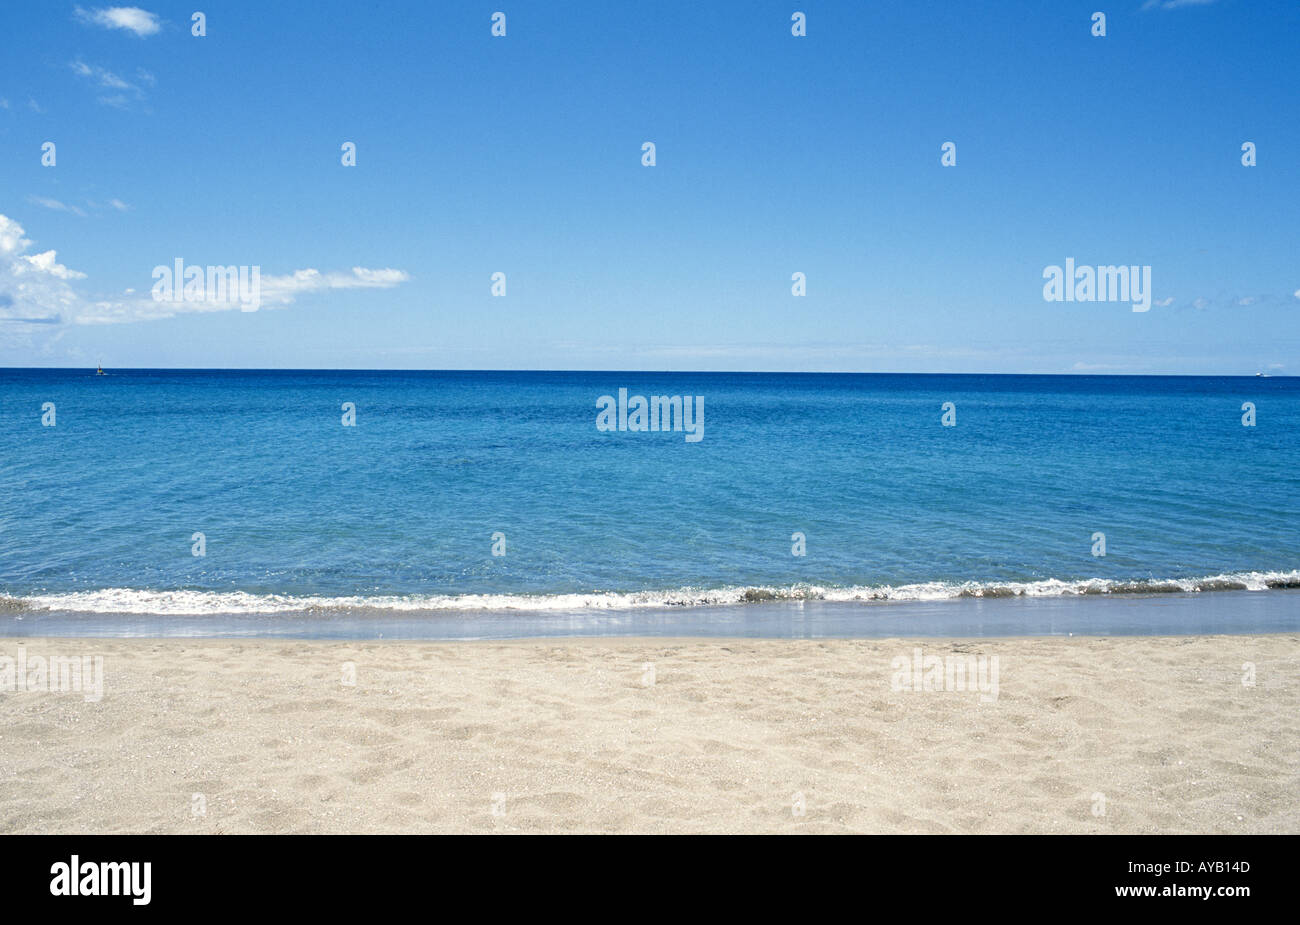 Clean beach calm sea 100 Visibility Stock Photo